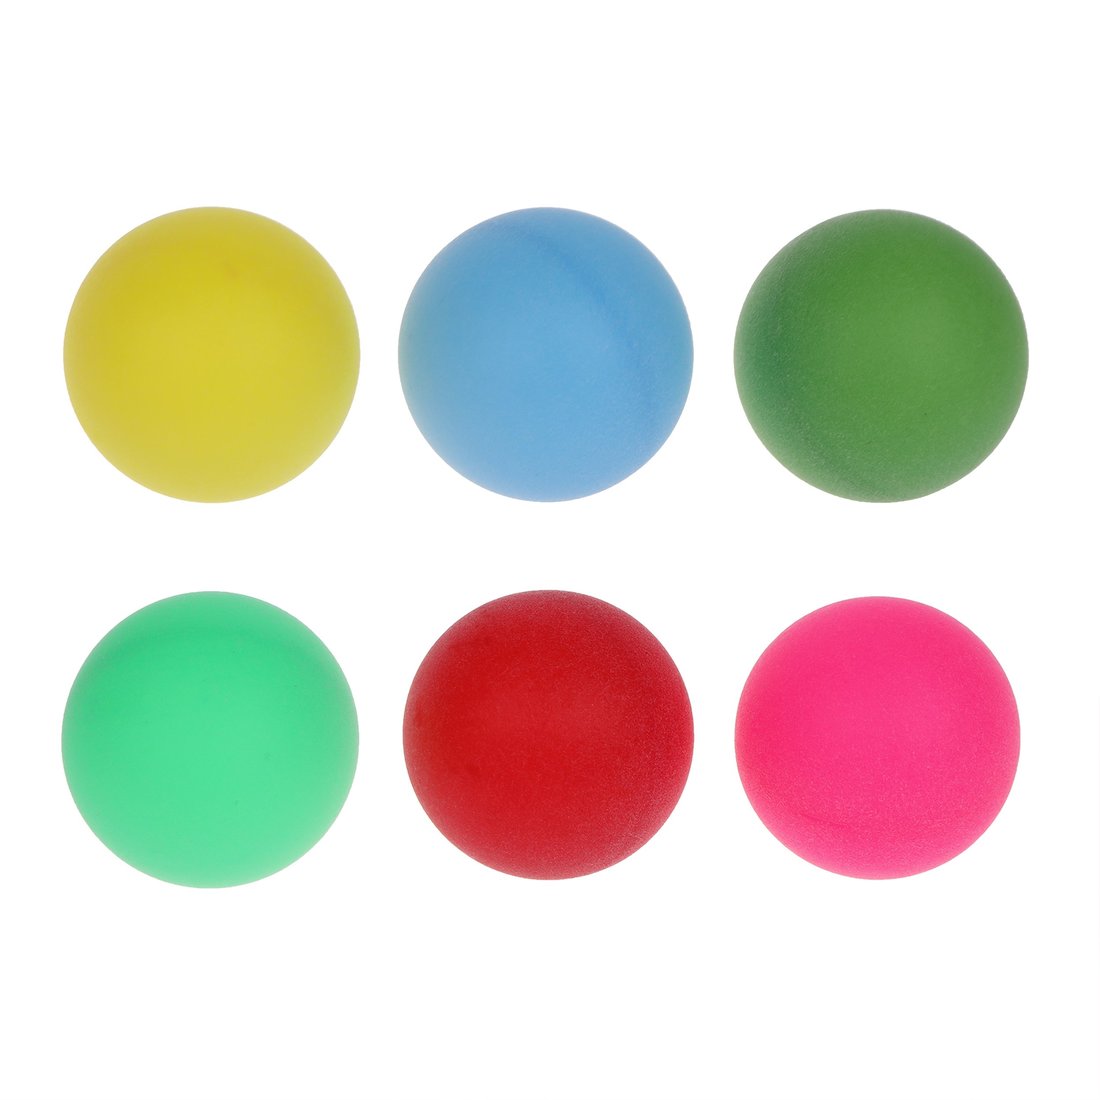 Шарики для настольного тенниса 636179 цветные в наборе 6шт в пакете - Омск 